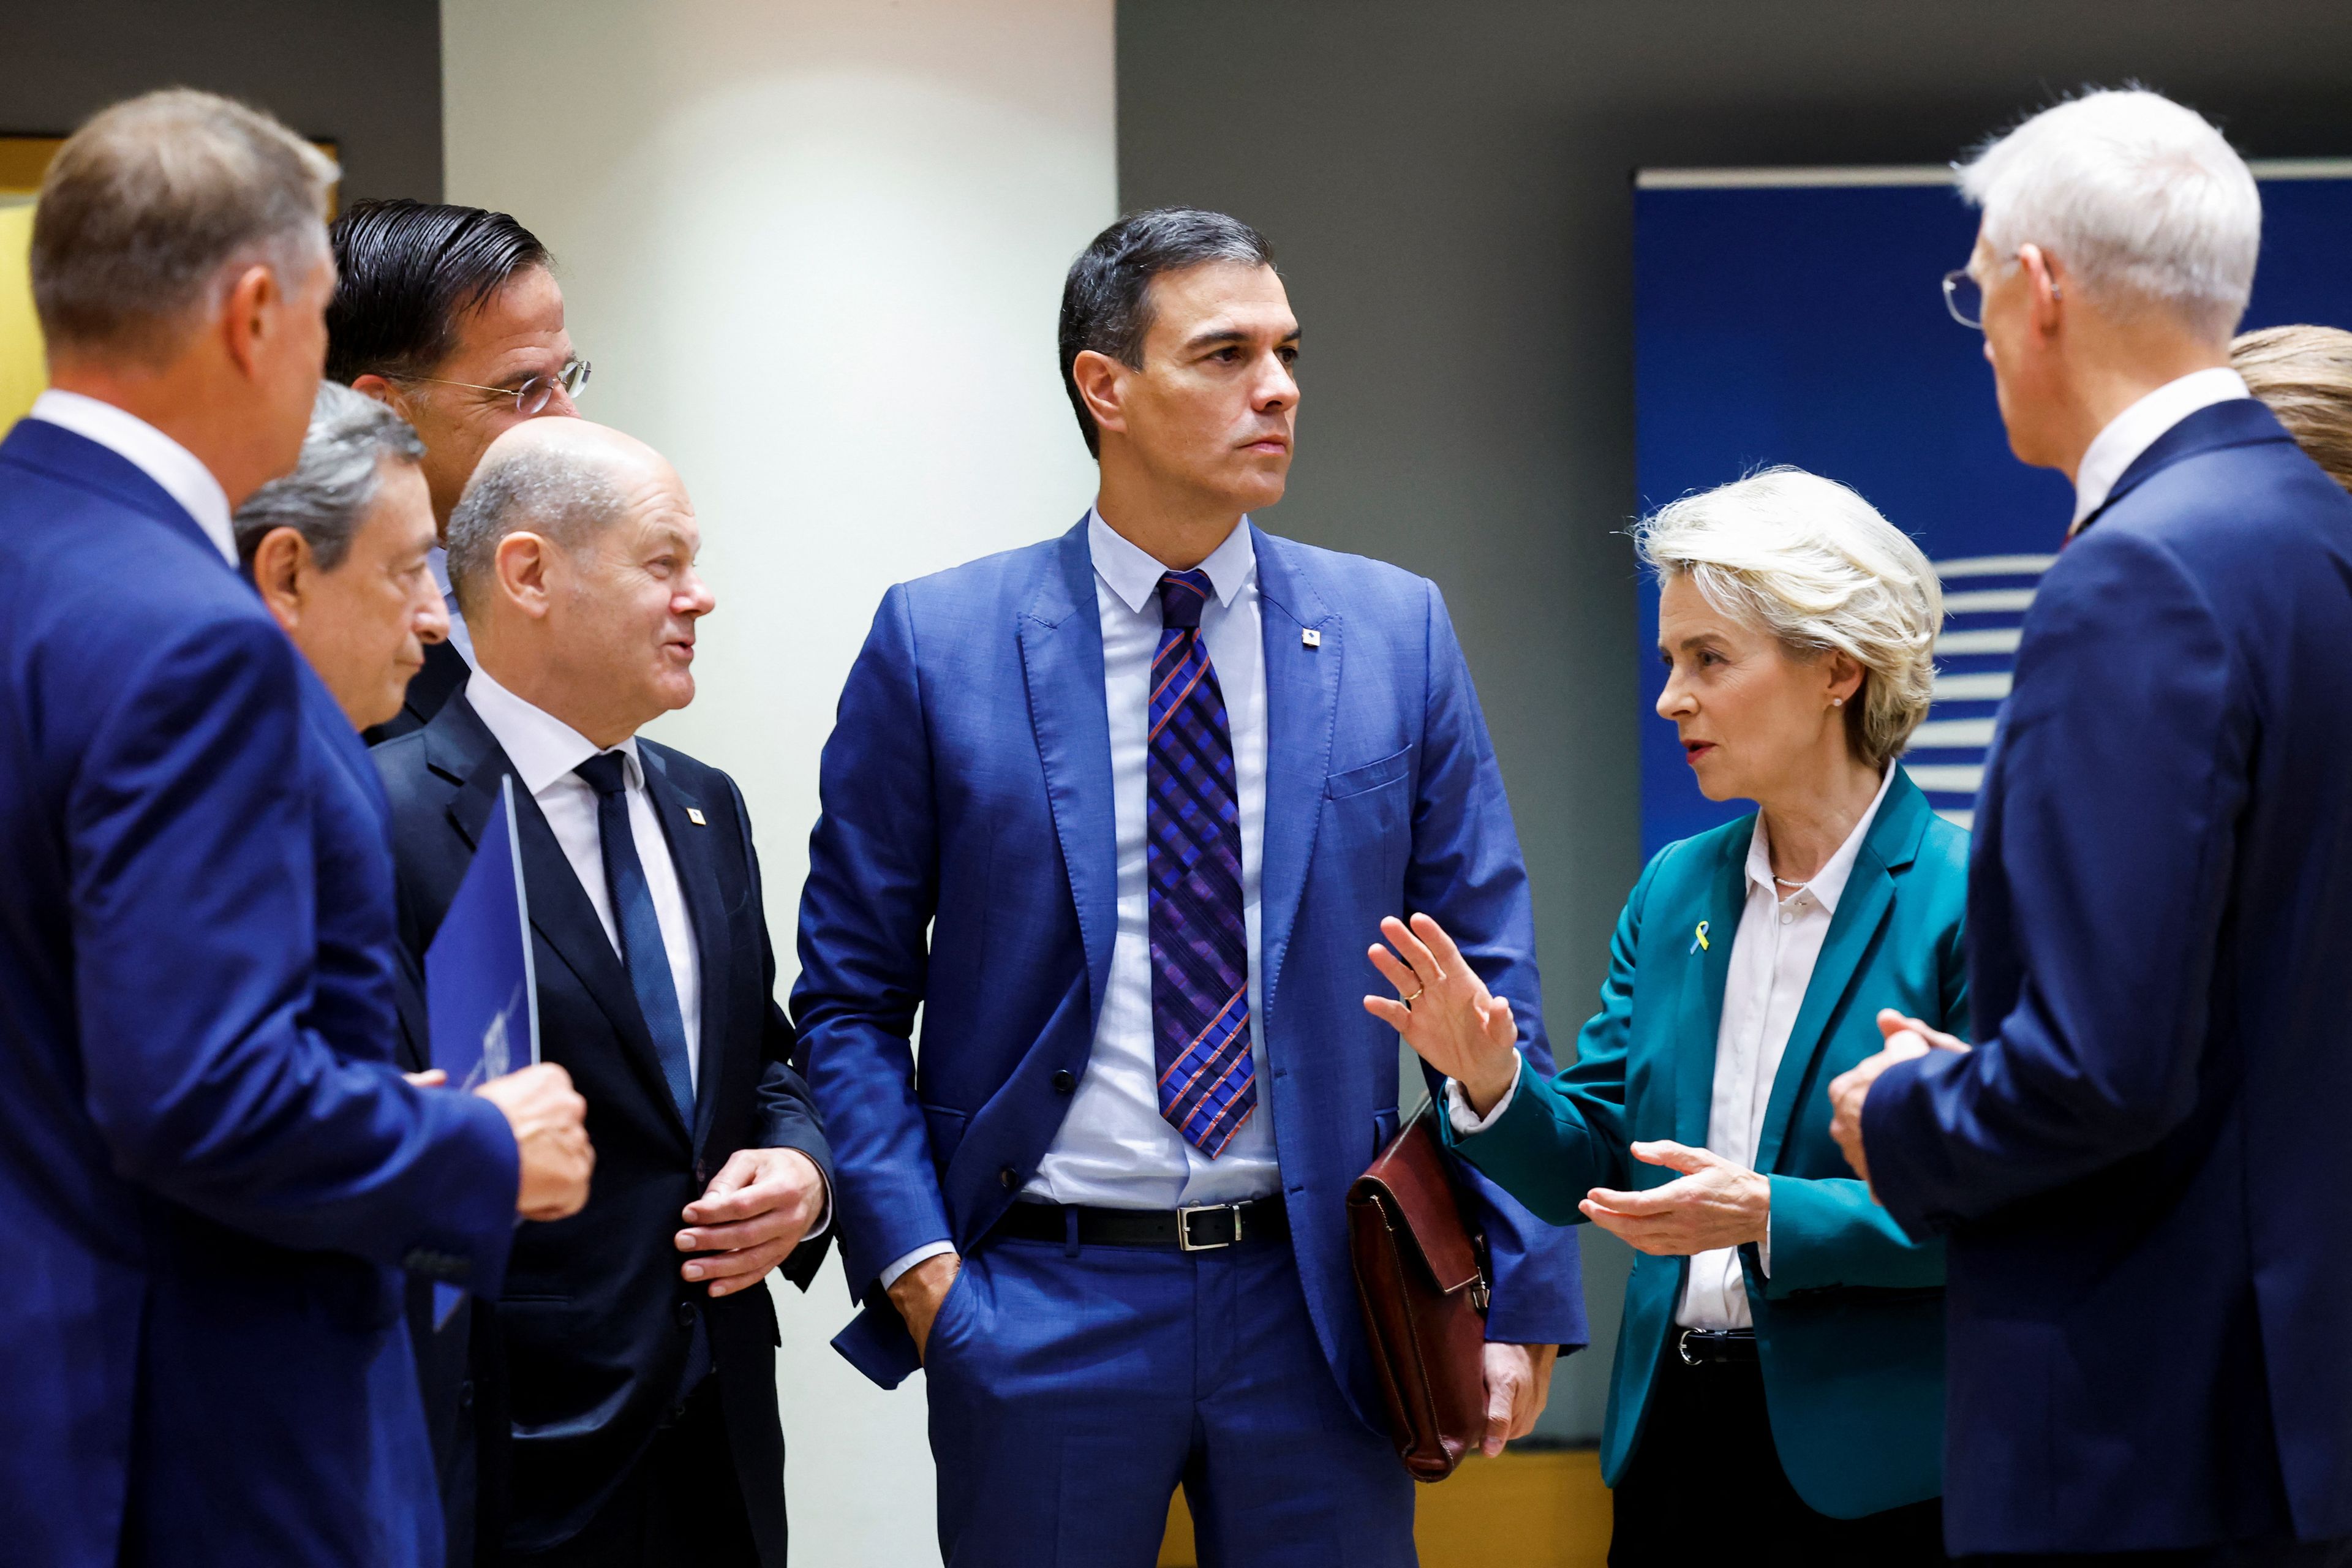 Pedro Sánchez rodeado de líderes europeos como Ursula Von der Leyen, presidenta de la Comisión Europea y Olaf Scholz, canciller de Alemania entre otros.